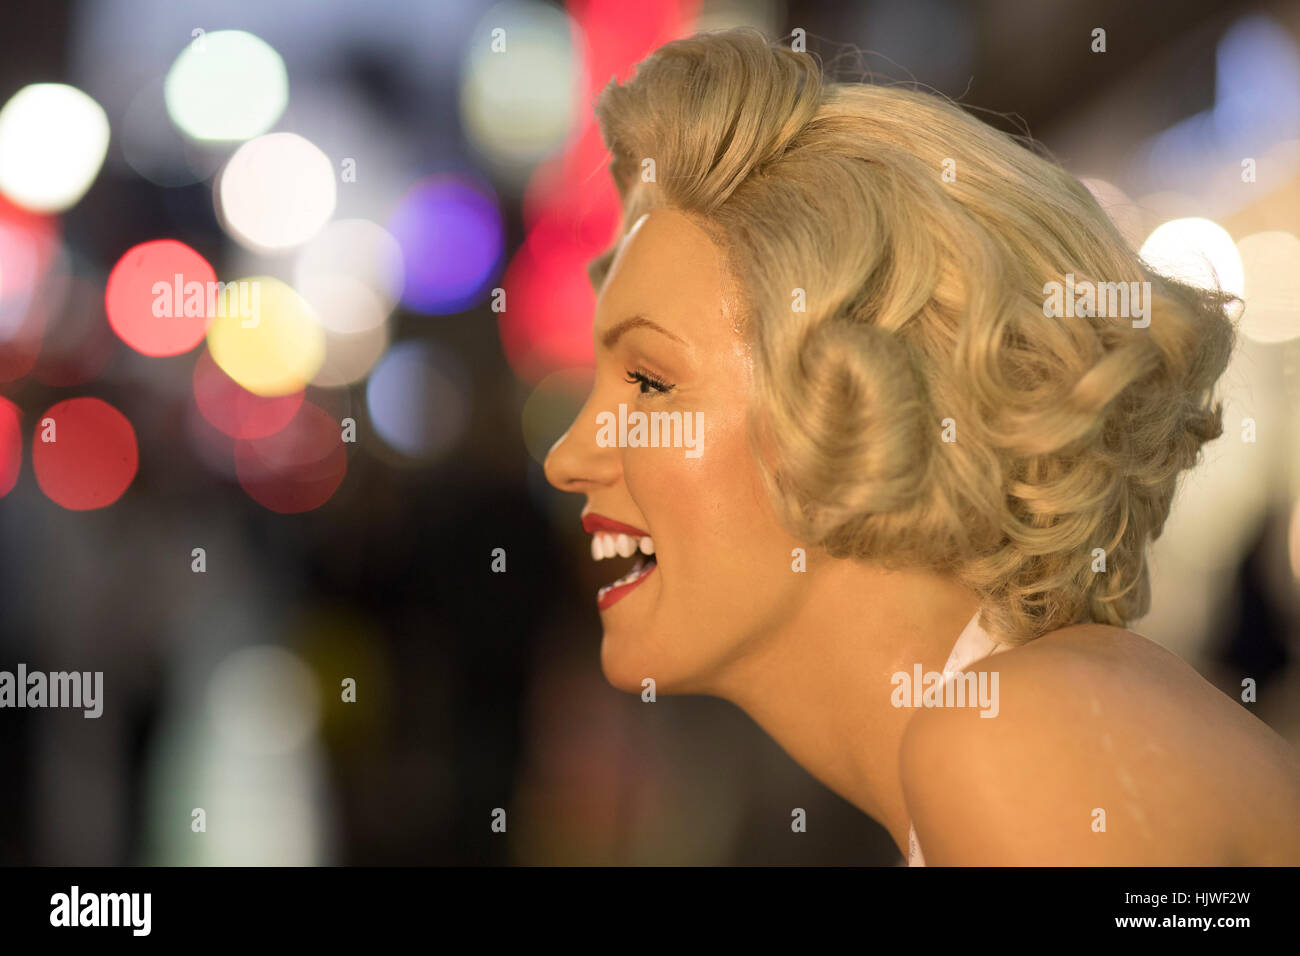 Une cire à la ressemblance de Marilyn Monroe (la promotion du musée de cire de Madame Tussauds) Hollywood Boulevard, Hollywood, Los Angeles, Californie, USA Banque D'Images